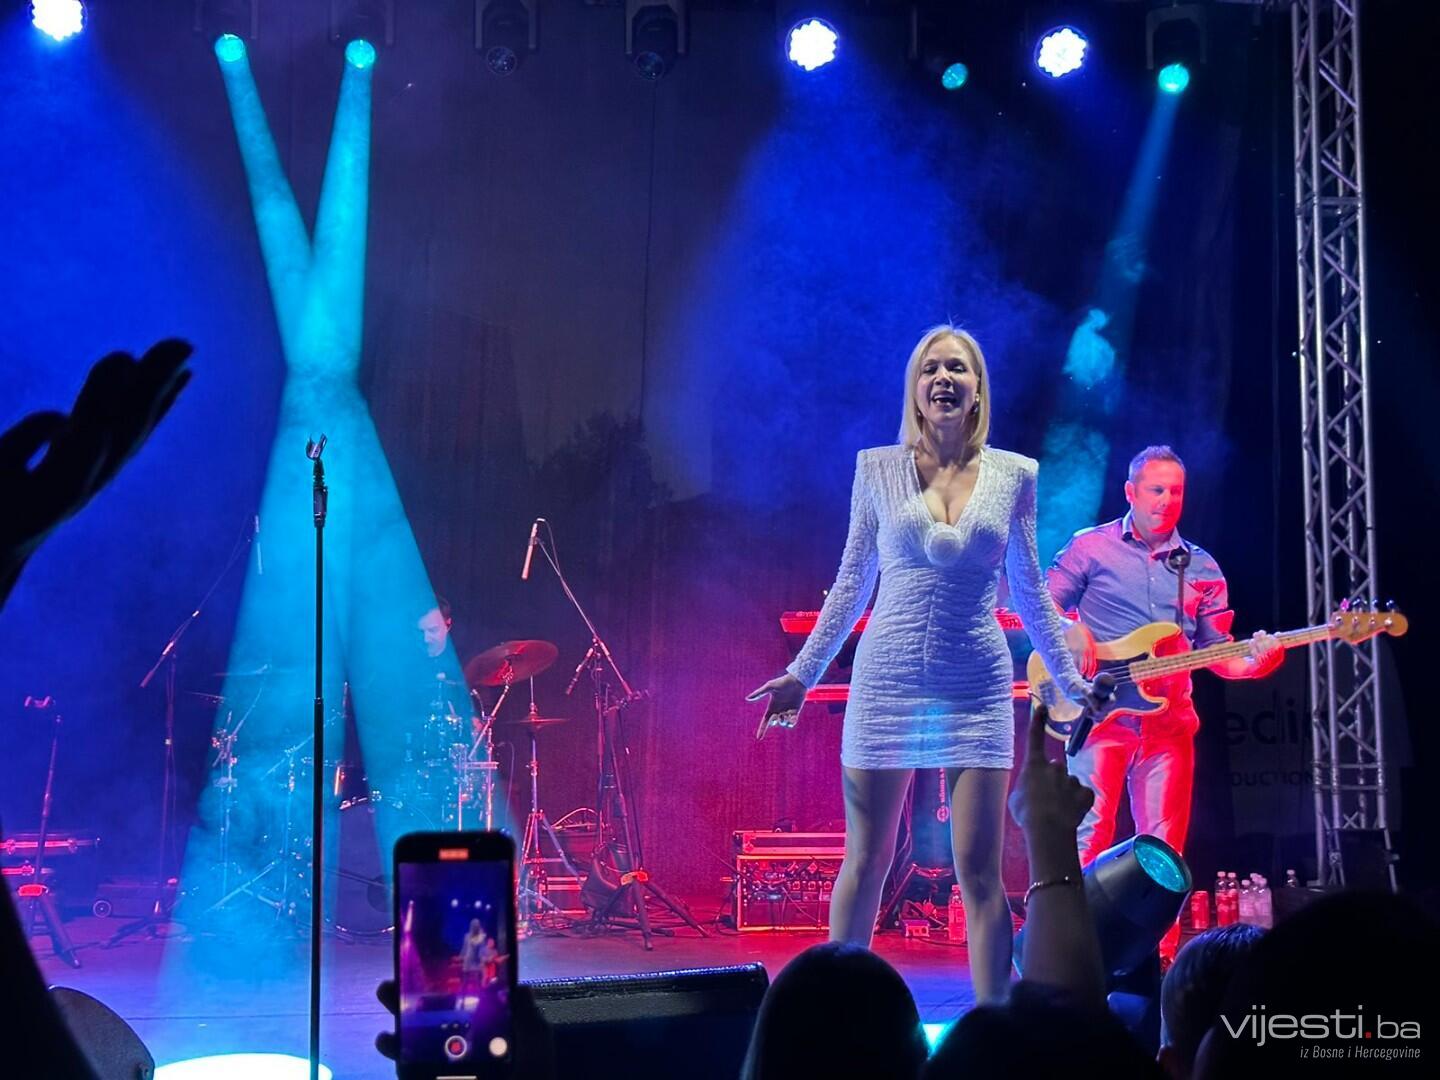 FOTO&VIDEO / Rozga u Hercegovini priredila koncert za pamćenje, pogledajte atmosferu